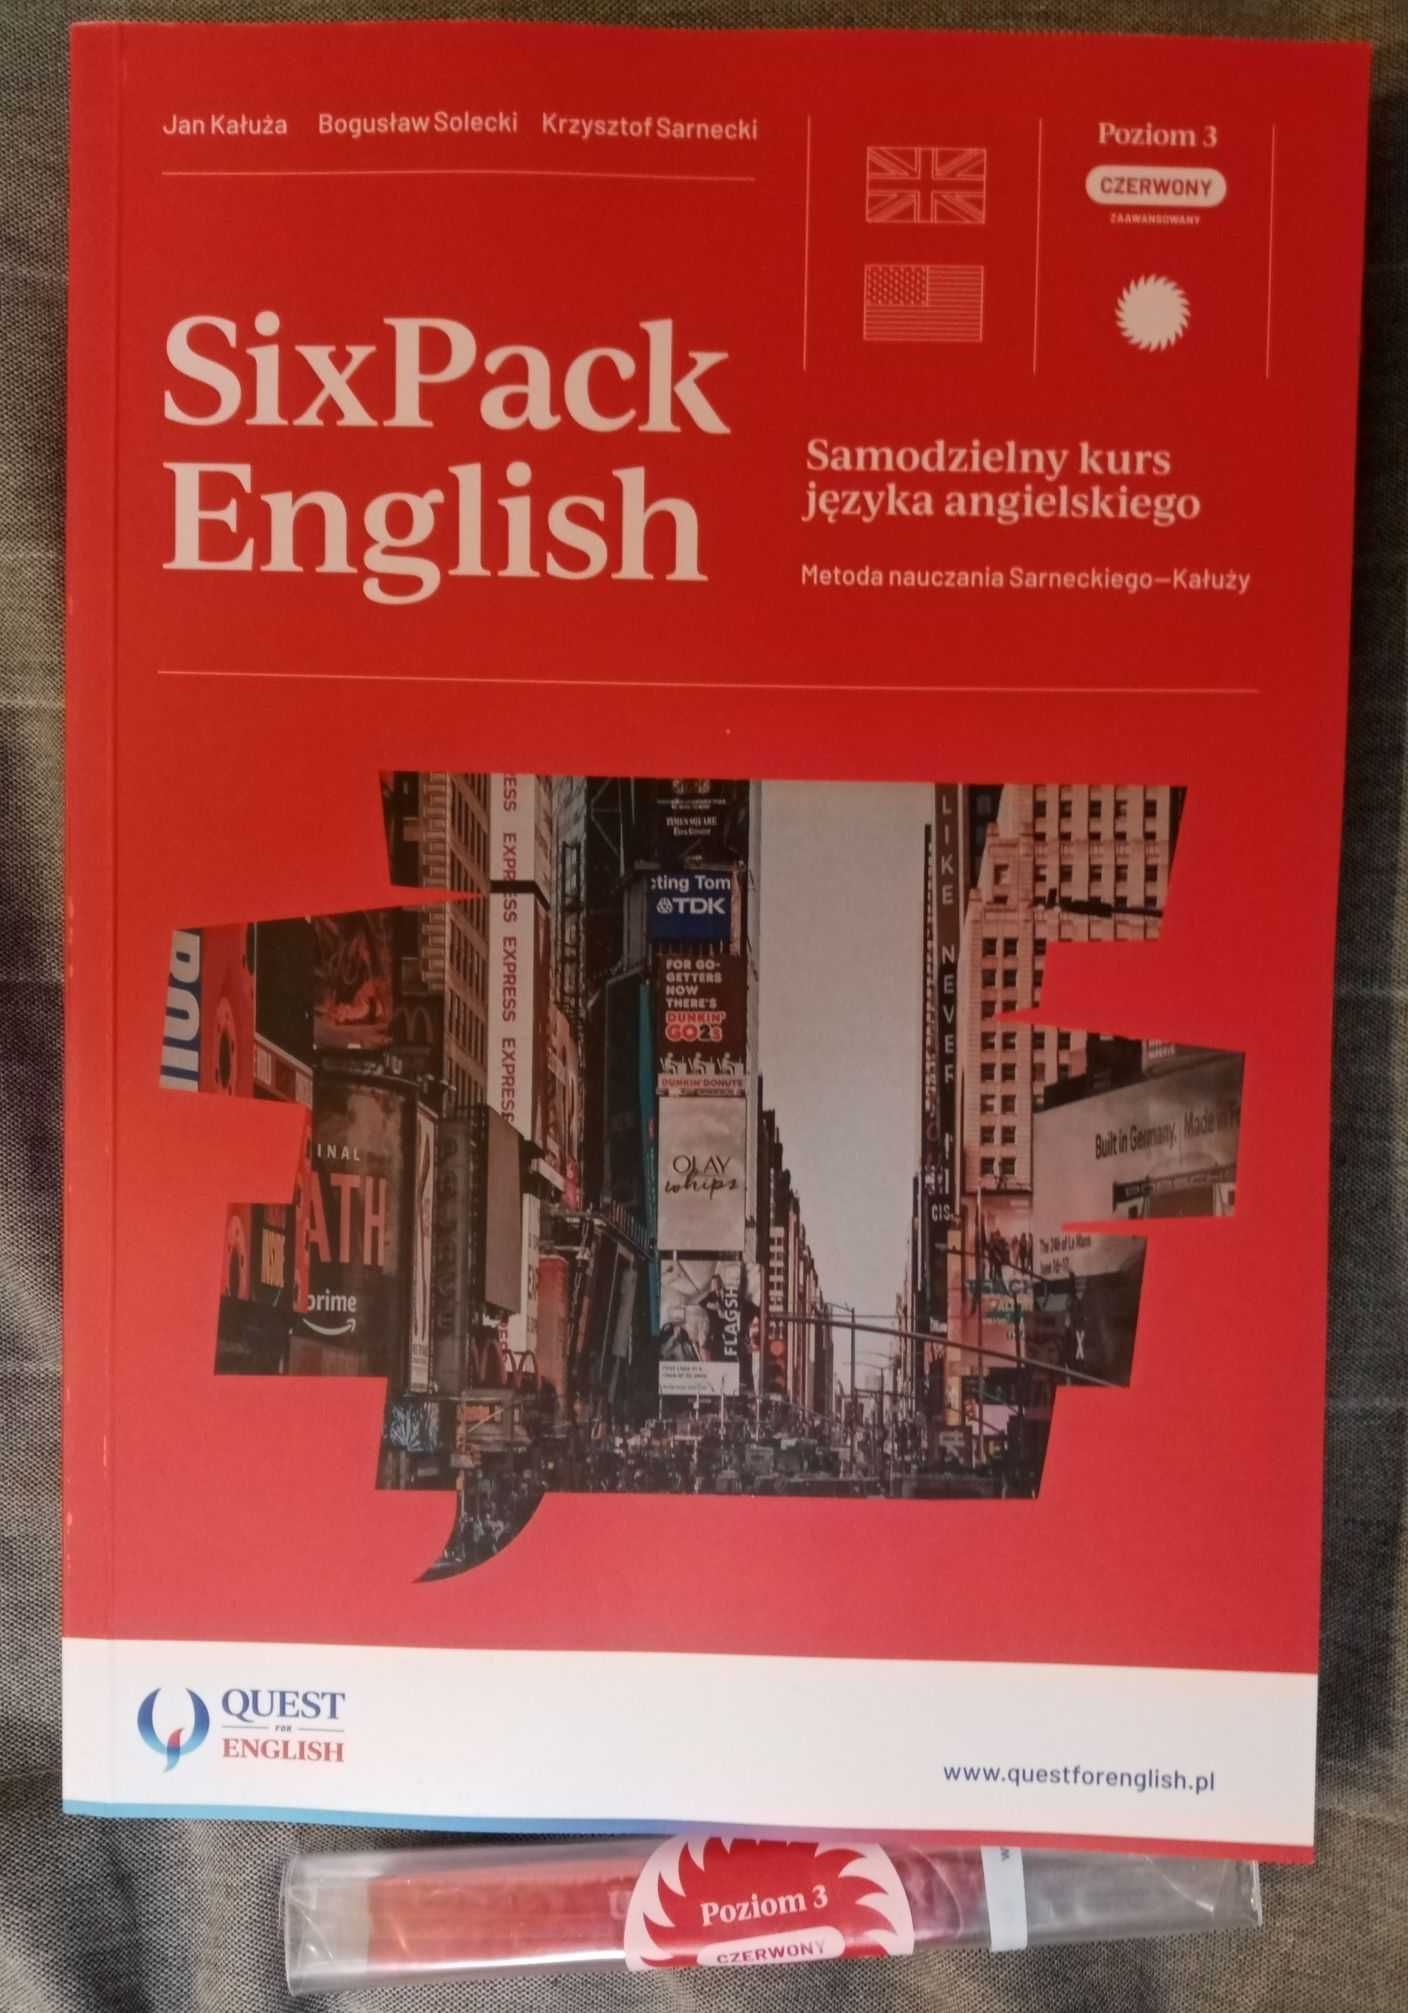 kurs angielskiego SixPack English - poziom 3 (czerwony) - PROMOCJA !